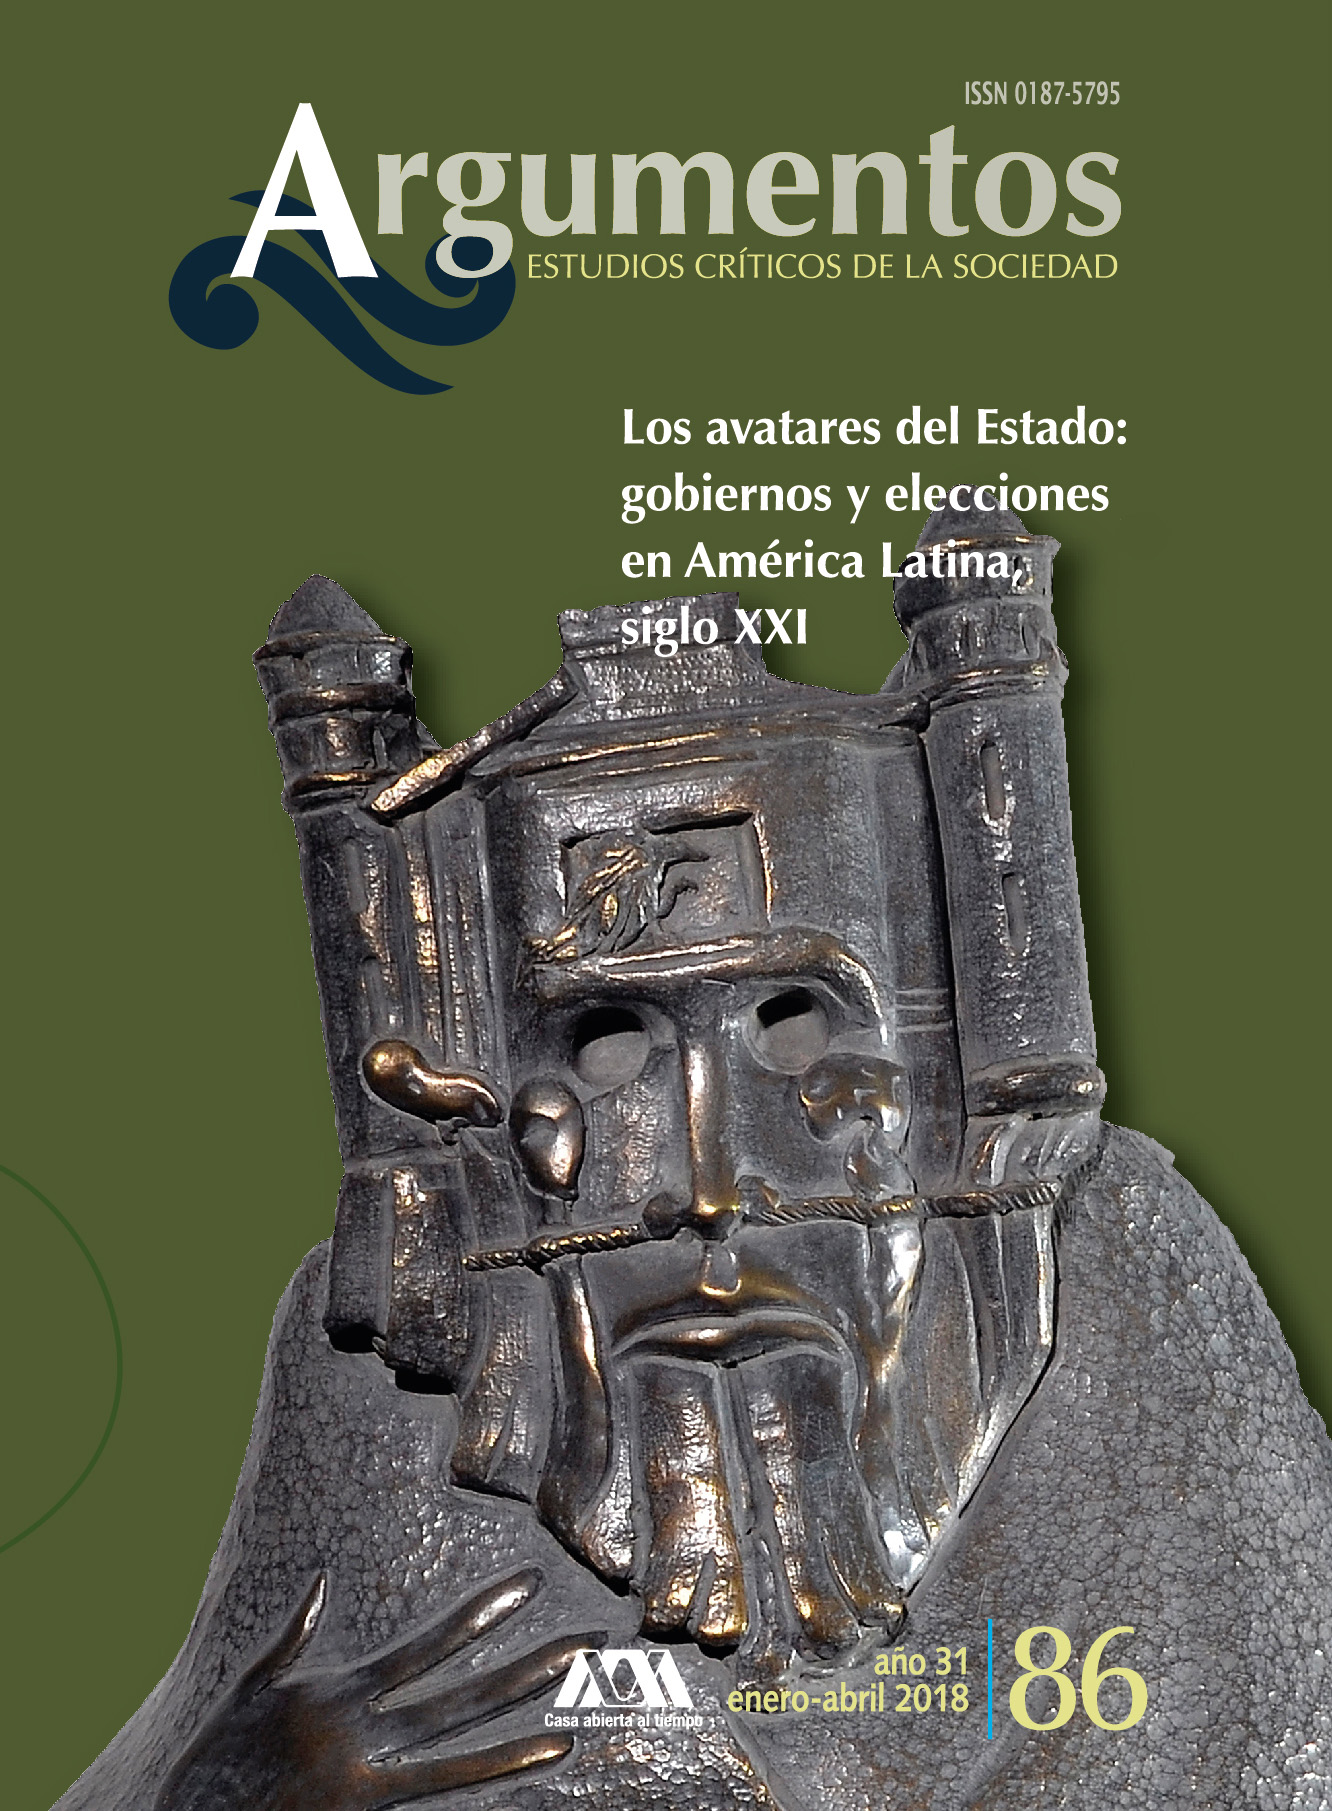 					View Núm. 86: "Los avatares del Estado: gobiernos y elecciones en América Latina, siglo XXI"
				